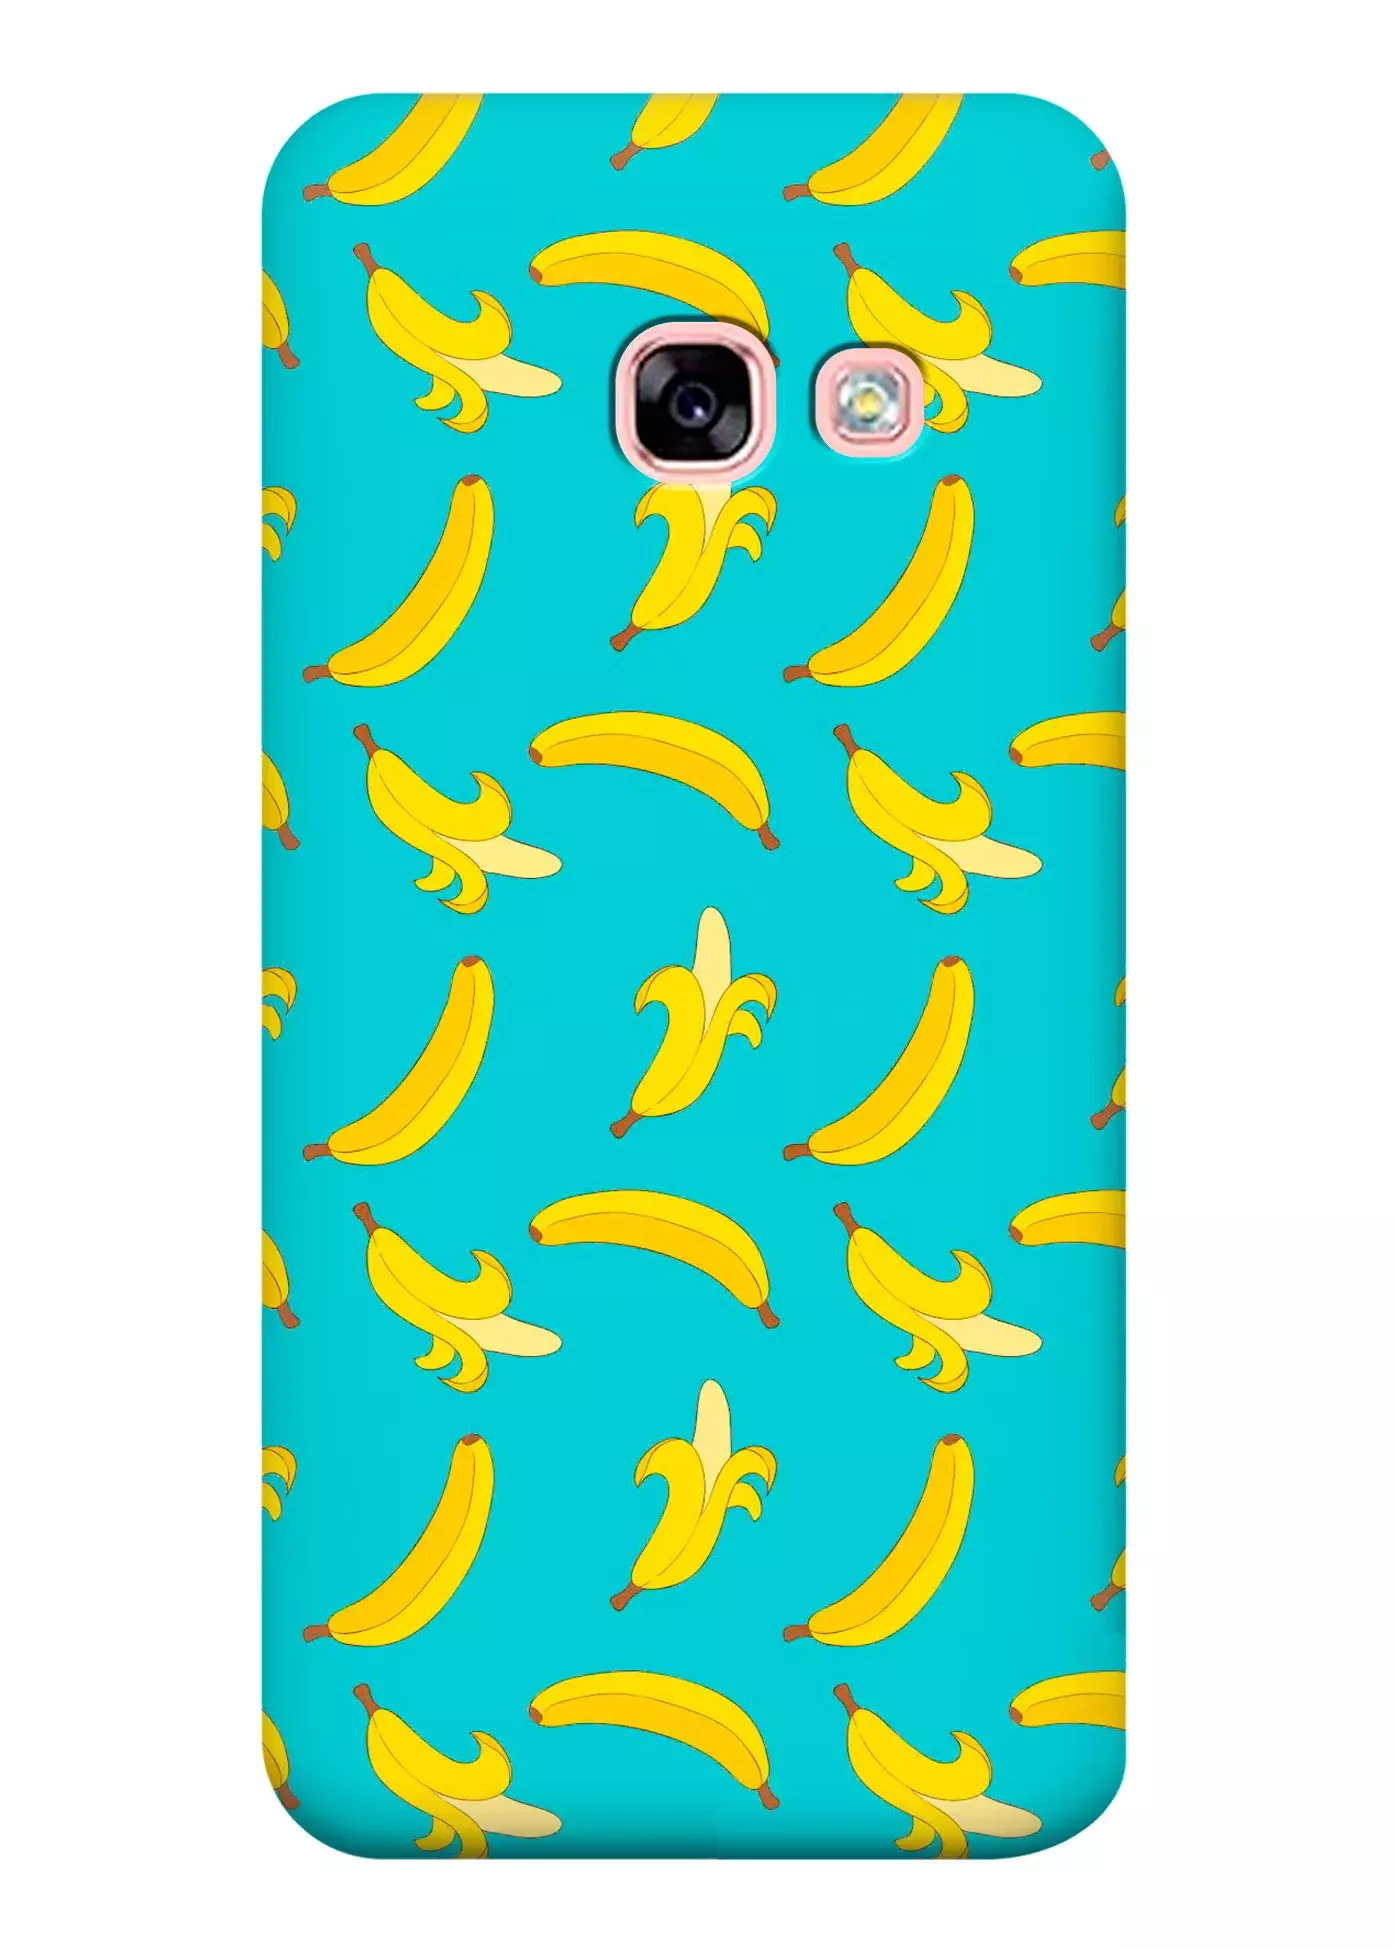 Чехол для Galaxy A7 2017 - Бананы